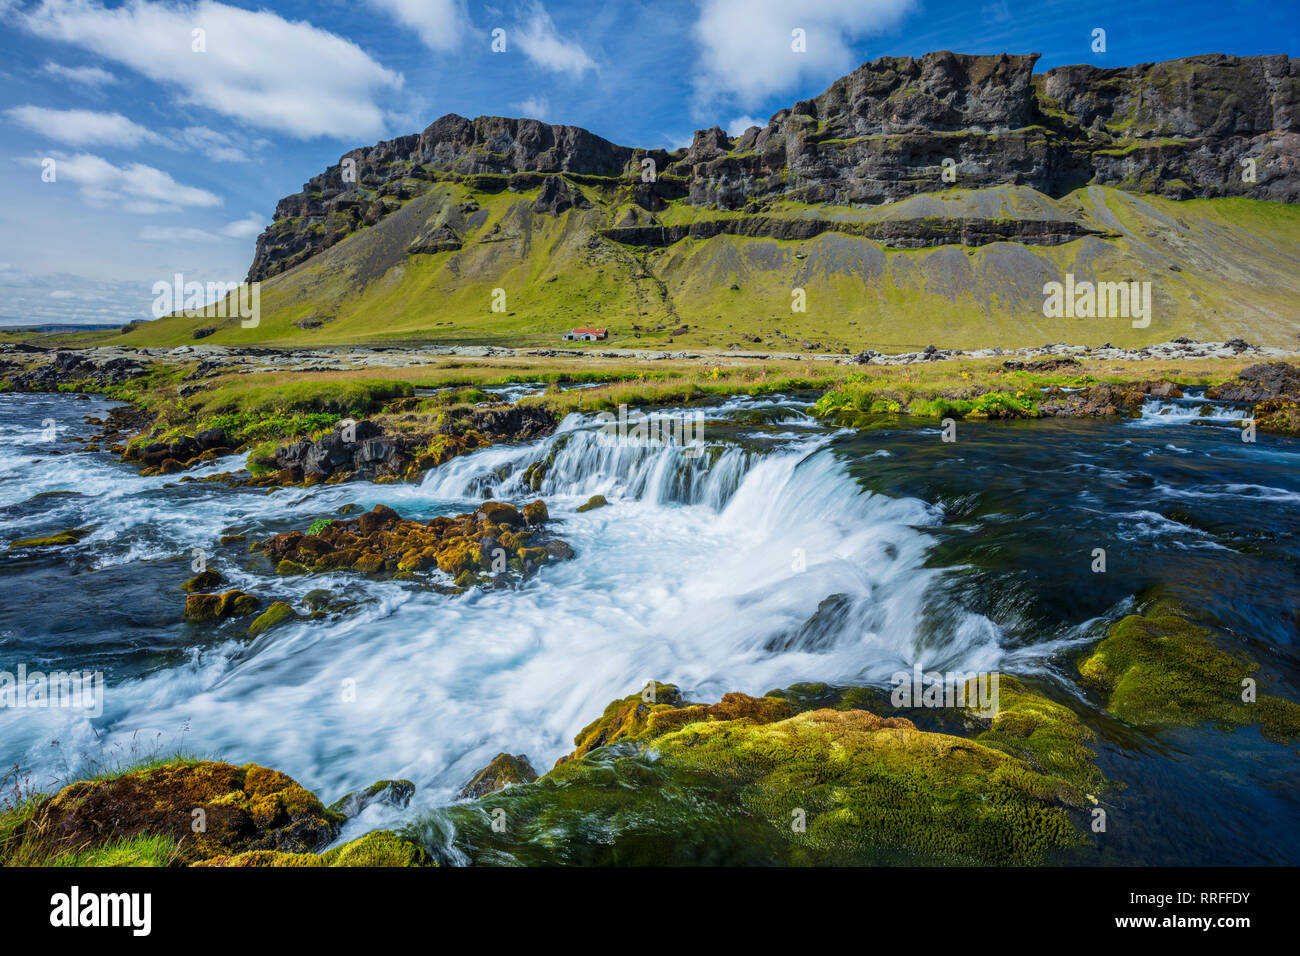 Ferme isolée à côté de la rivière, Odulbruara Brunasandur. Sudhurland, sud de l'Islande. Banque D'Images